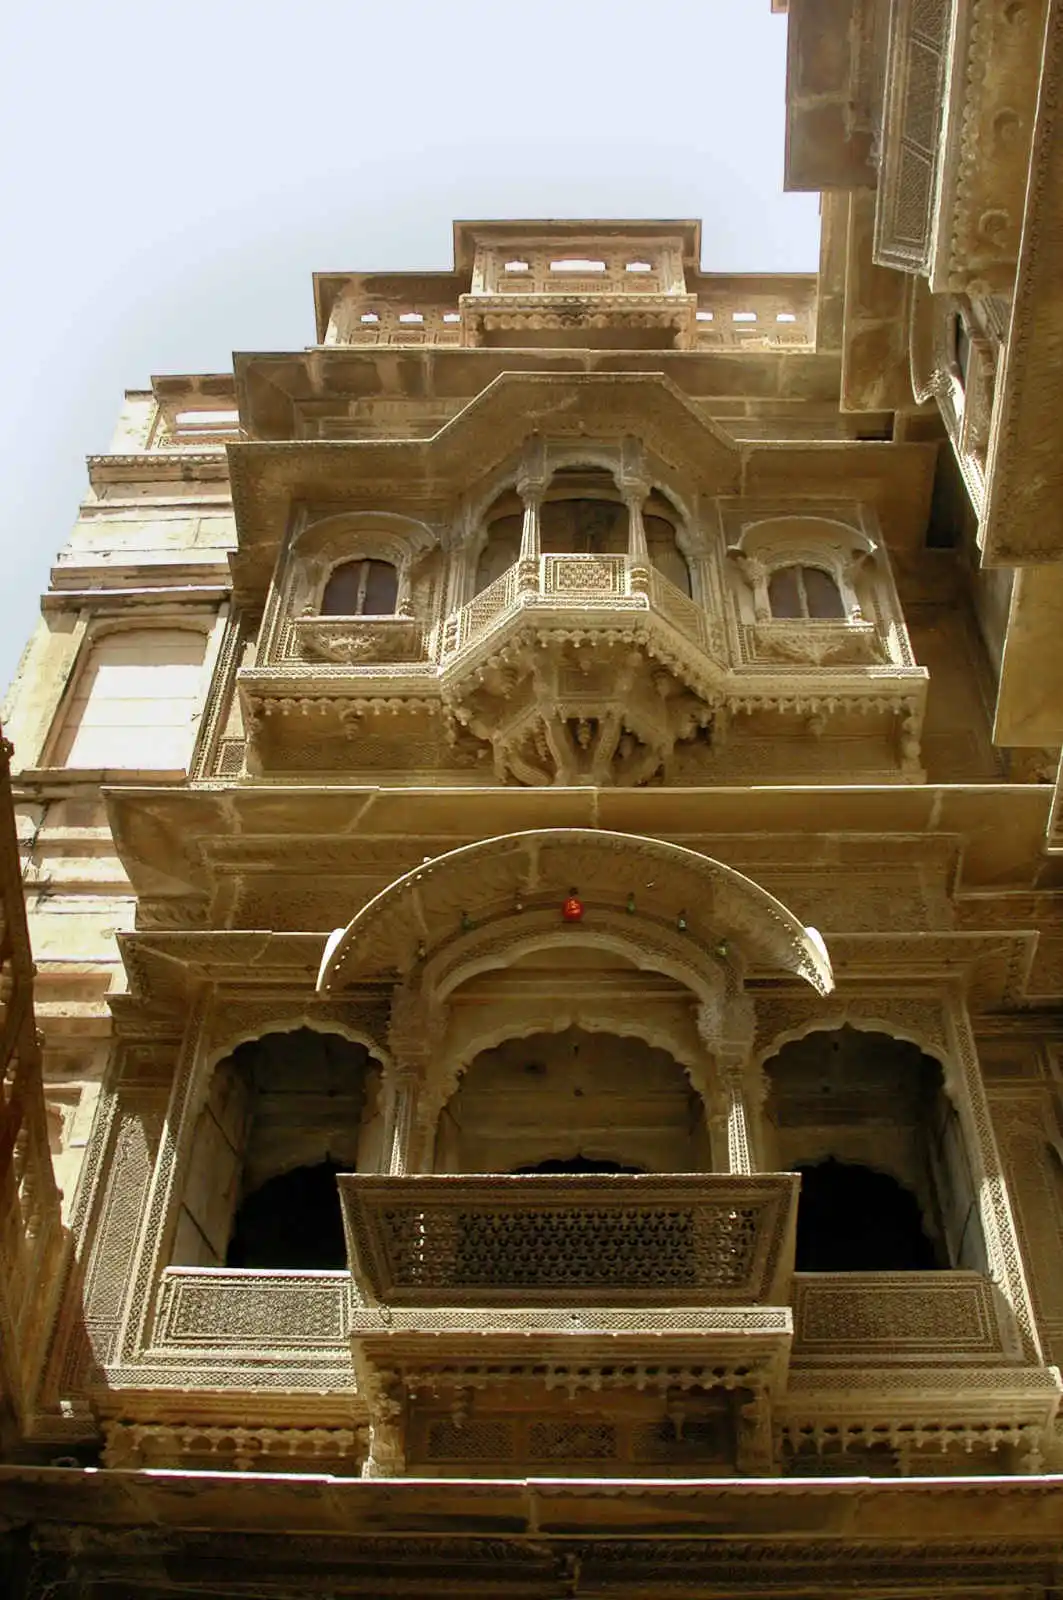 Inde - Inde du Nord et Rajasthan - Circuit Palais du Rajasthan